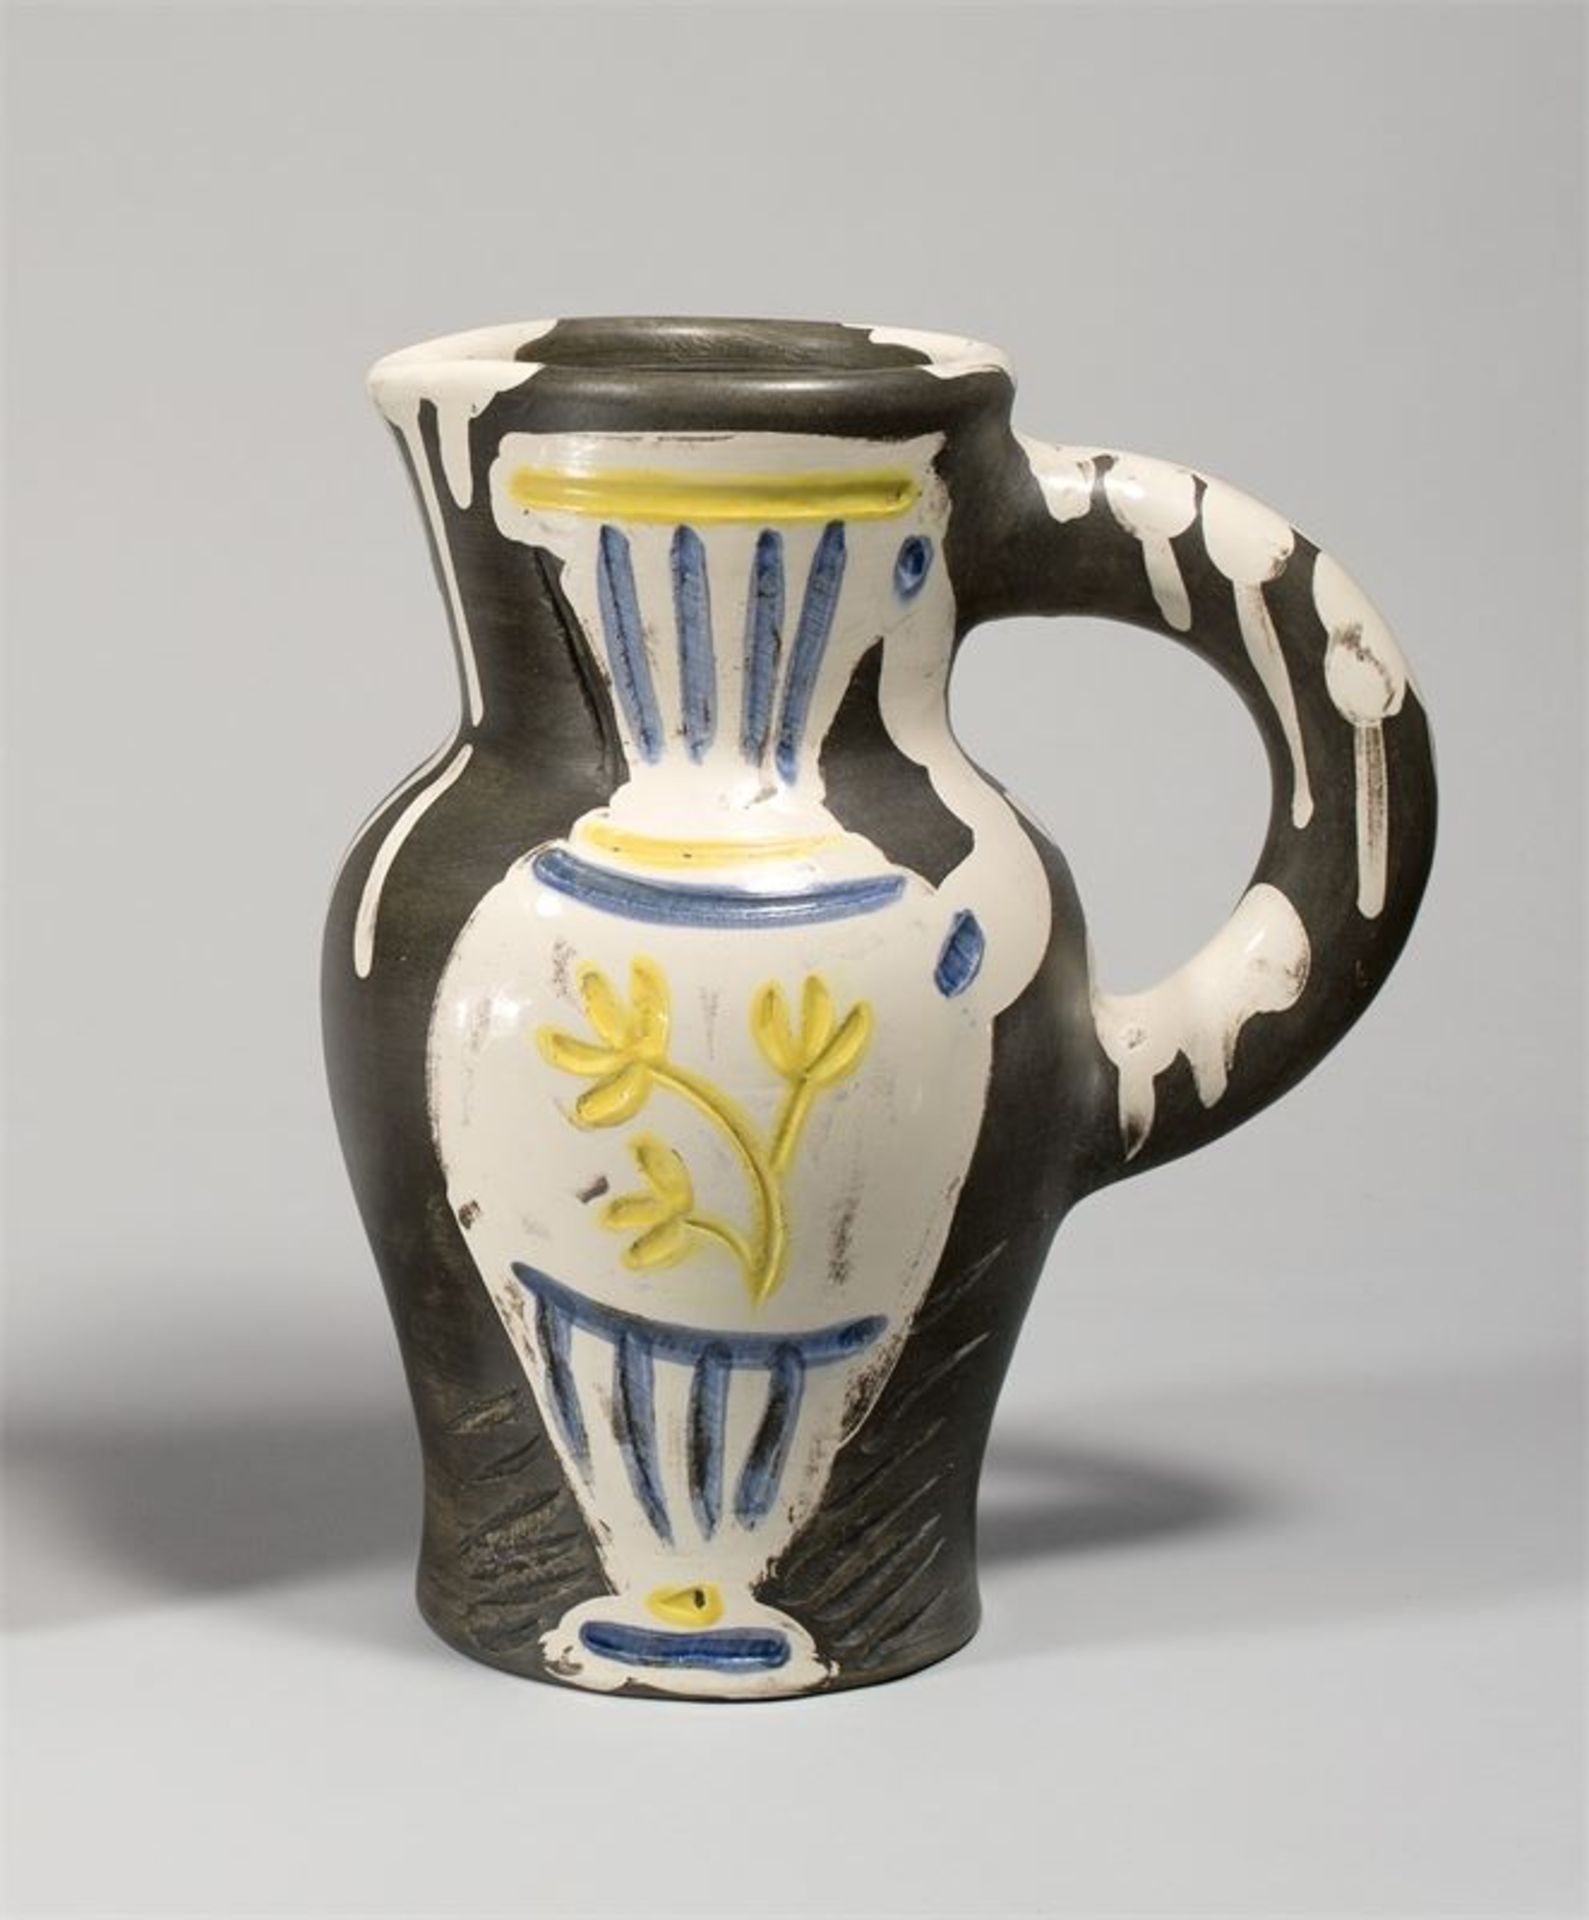 Pablo Picasso (Málaga 1881 – 1973 Mougins) - „Pichet au vase“. 1954 - Krug, [...]